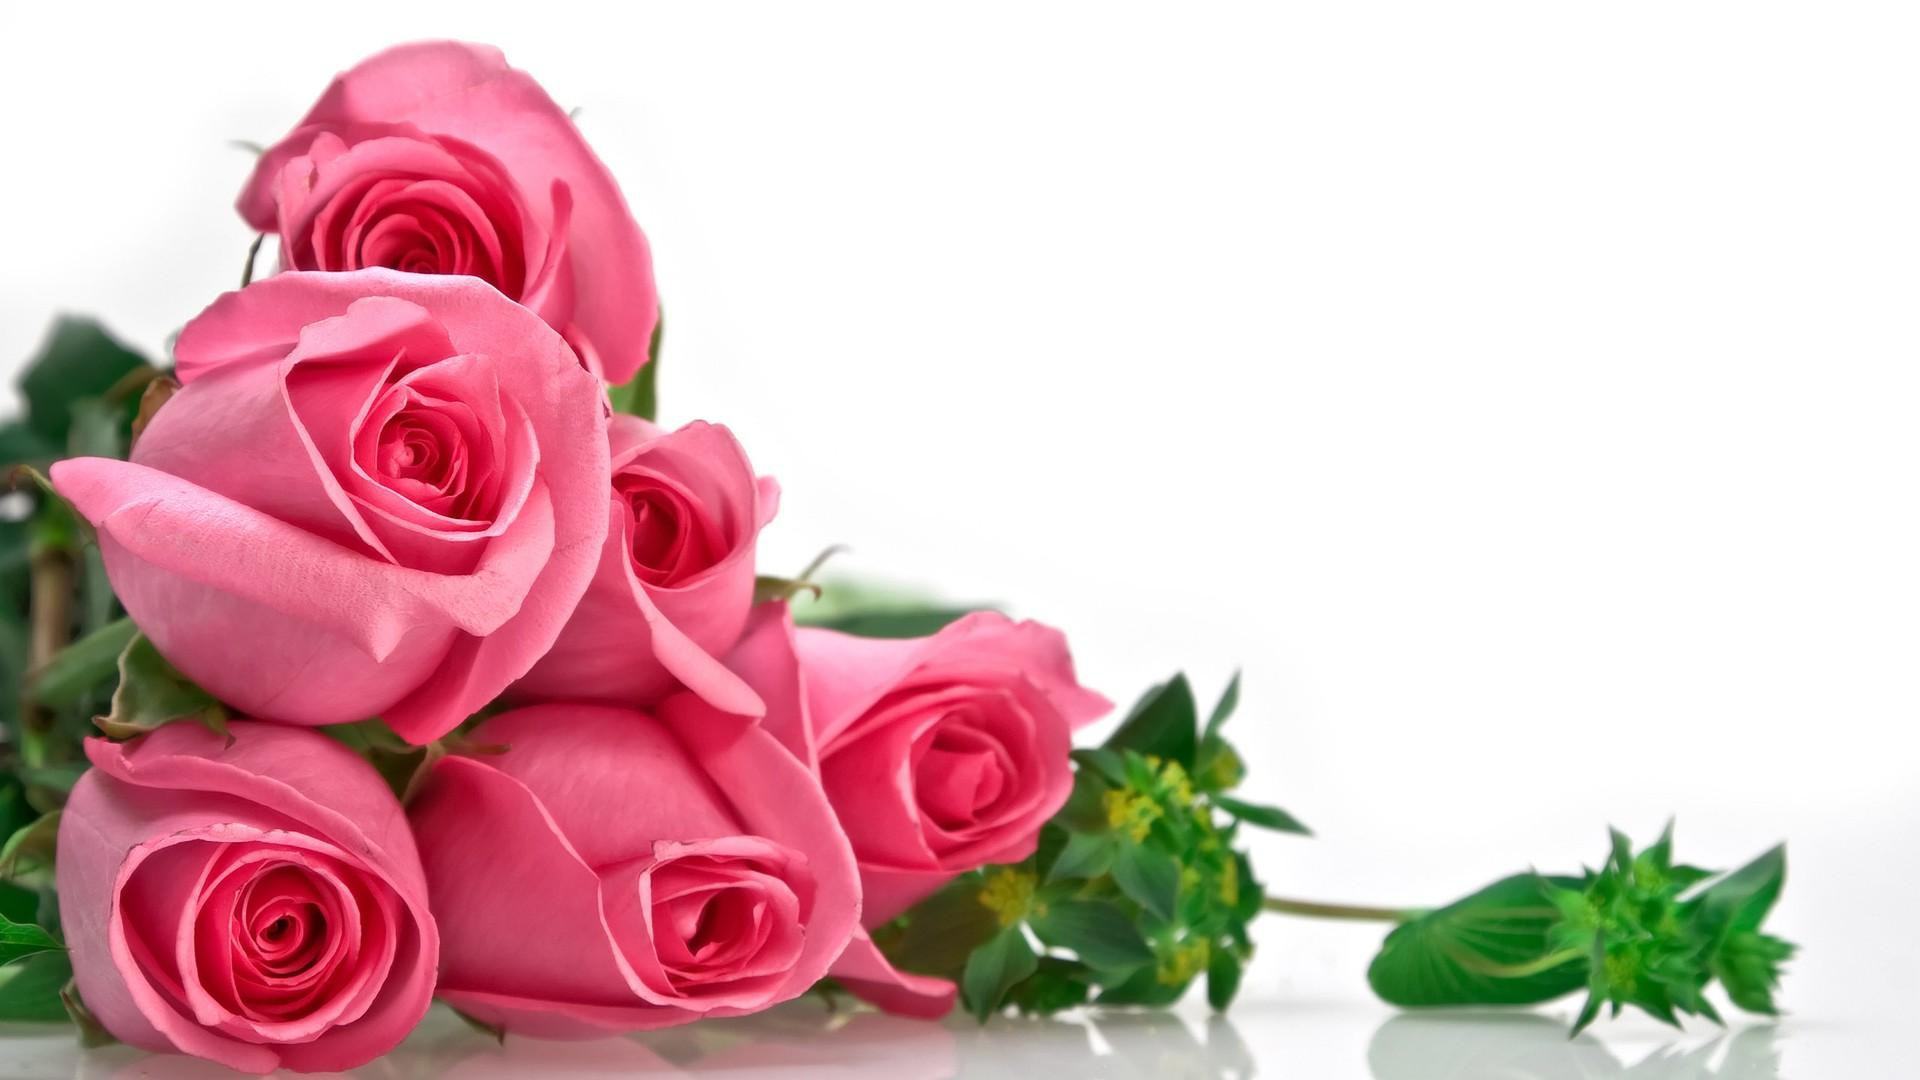 Hãy chiêm ngưỡng vẻ đẹp quyến rũ của những bông hoa hồng đỏ rực, tượng trưng cho tình yêu và sự dịu dàng.